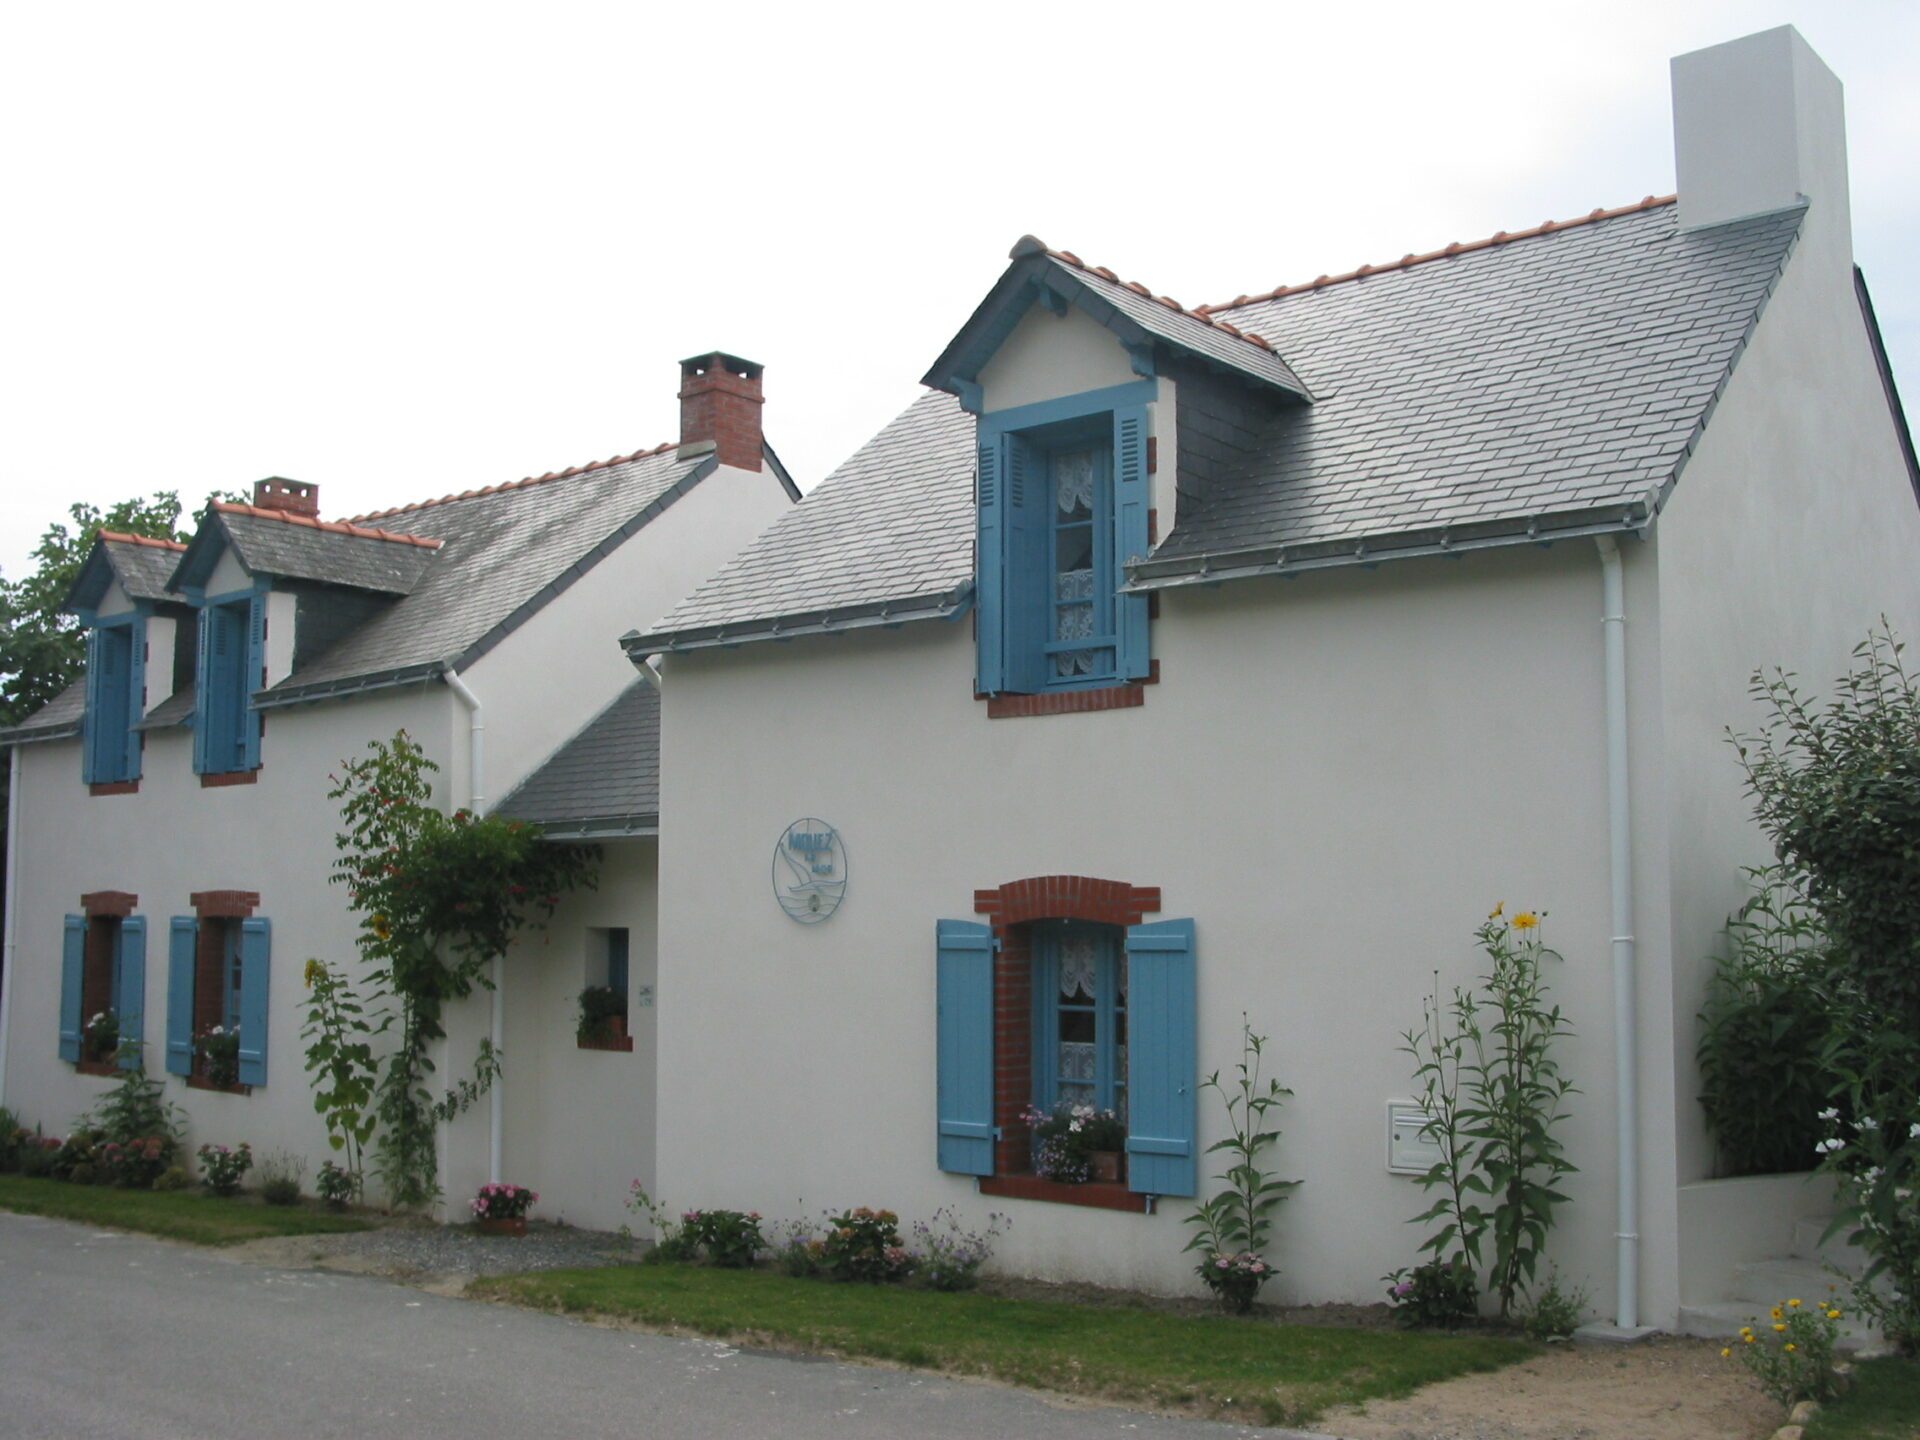 Maison avec toiture en ardoises et volets en bois bleu ciel